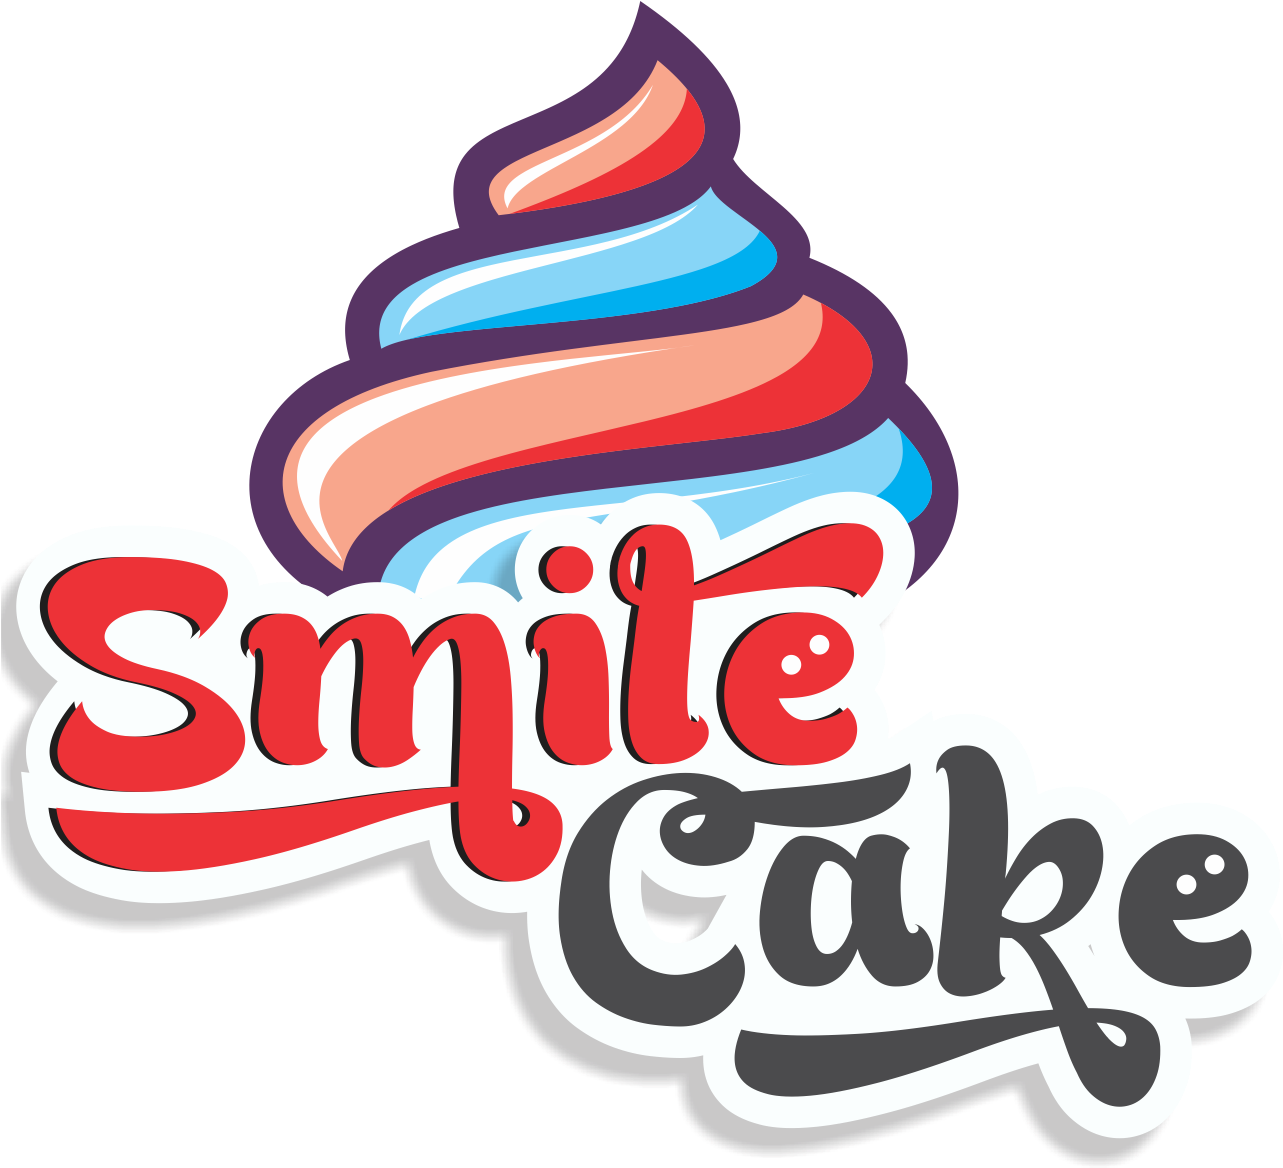 Smile Cake Shop Logo - Dairy Free Cake Shop Logo (1300x1300)